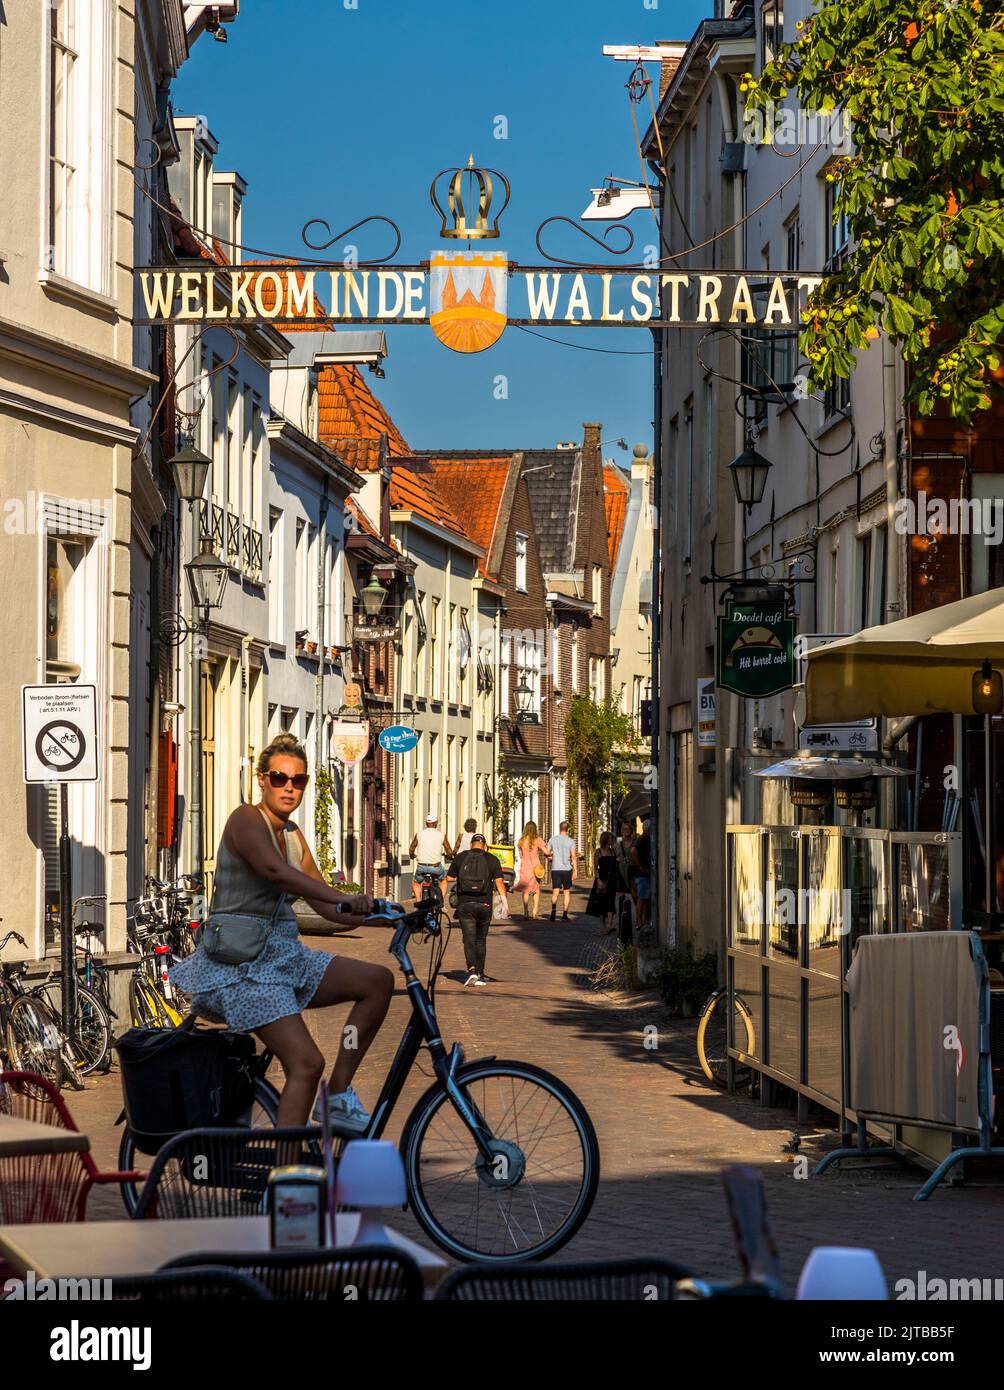 Il Walstraat è ancora una vivace via dello shopping nel centro storico di Deventer, nei Paesi Bassi. Si tratta di una delle dodici strade che portano alla piazza centrale De Brink, dove nel Medioevo si è tenuta una delle più grandi fiere d'Europa più volte all'anno Foto Stock